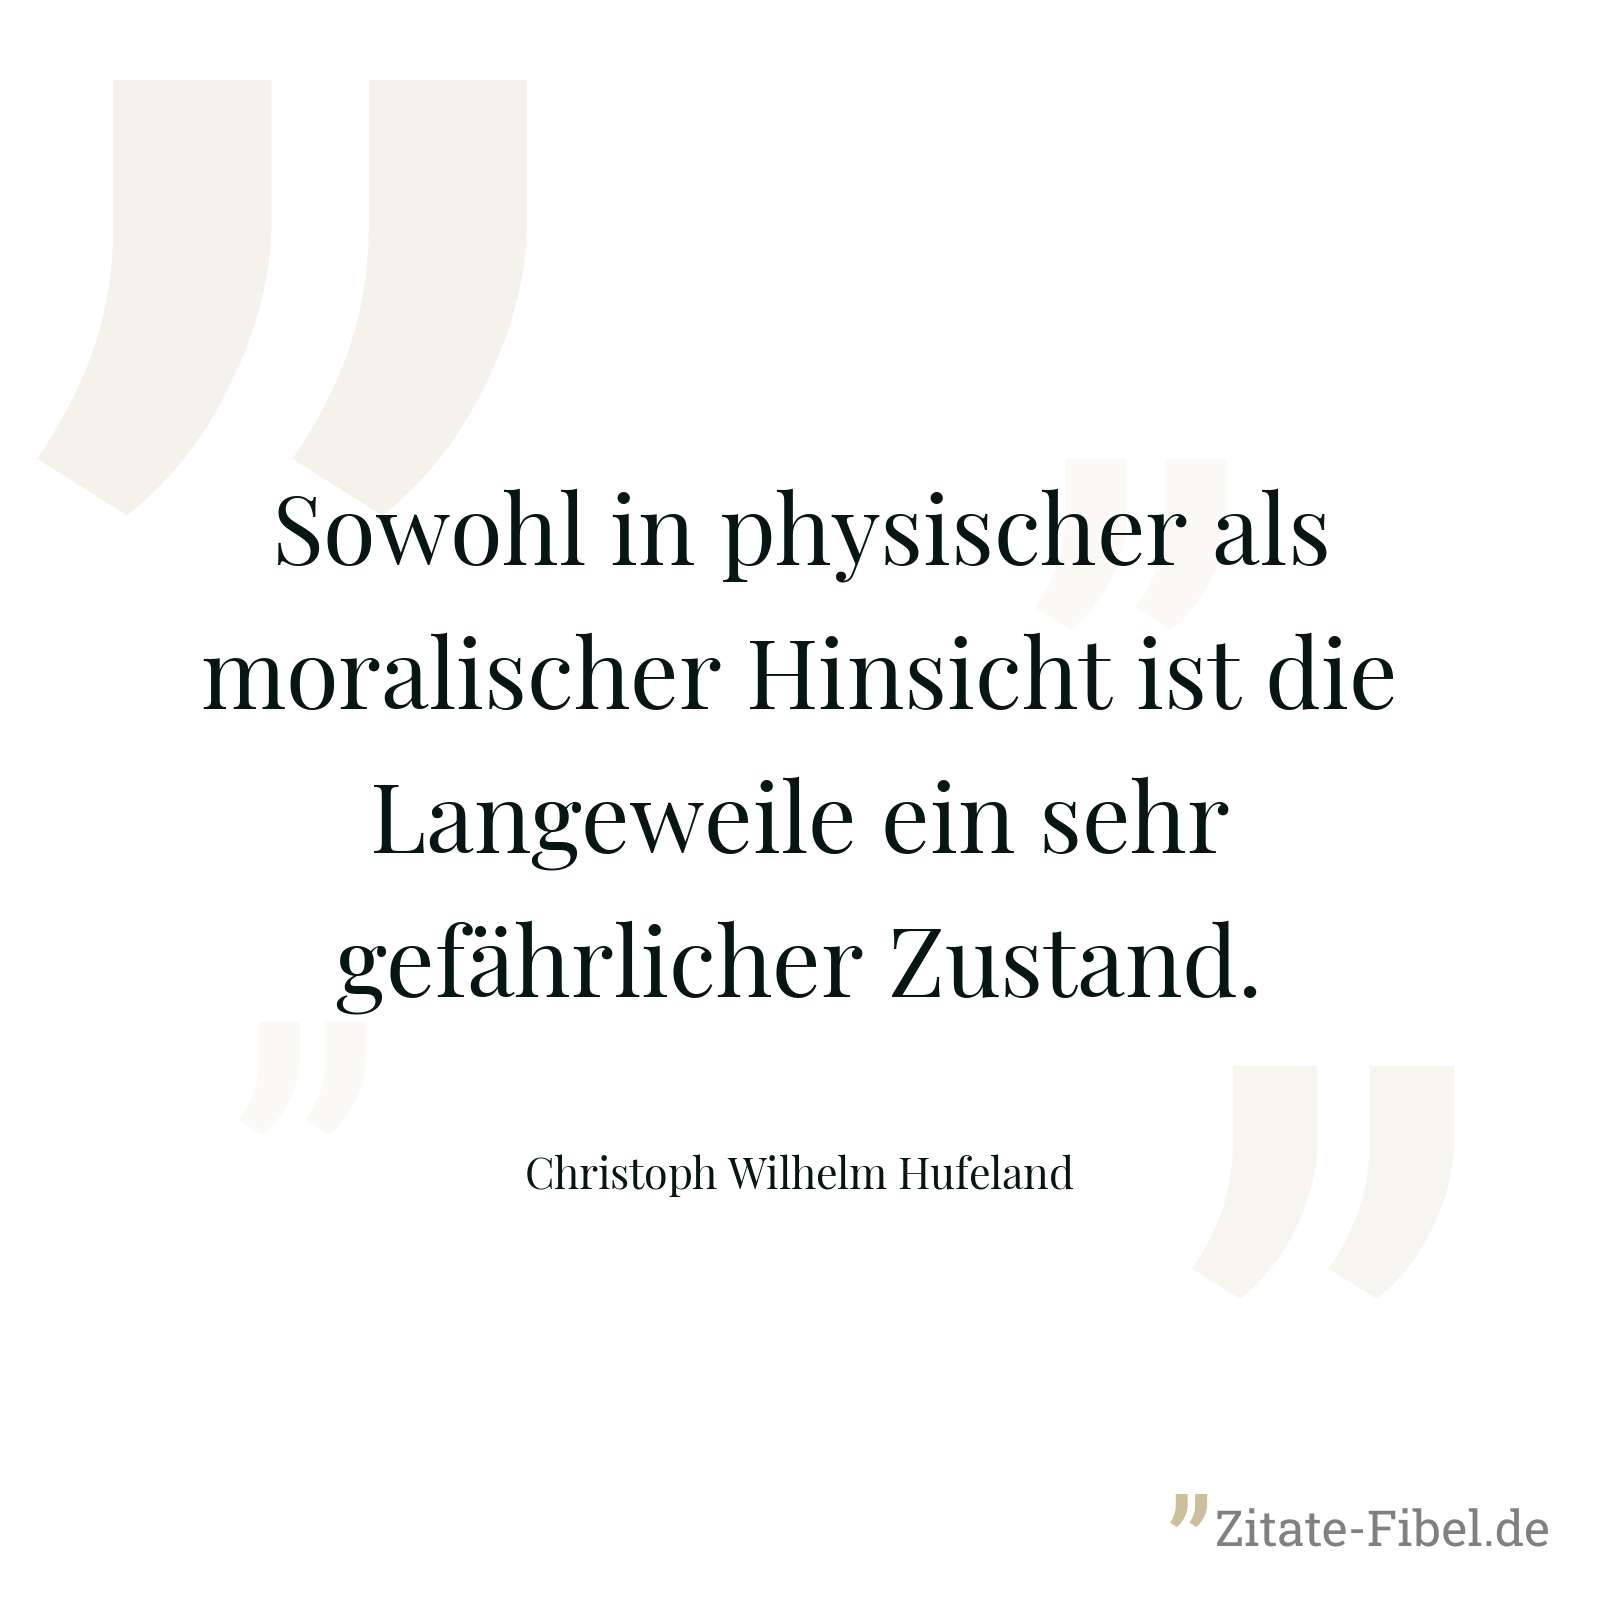 Sowohl in physischer als moralischer Hinsicht ist die Langeweile ein sehr gefährlicher Zustand. - Christoph Wilhelm Hufeland